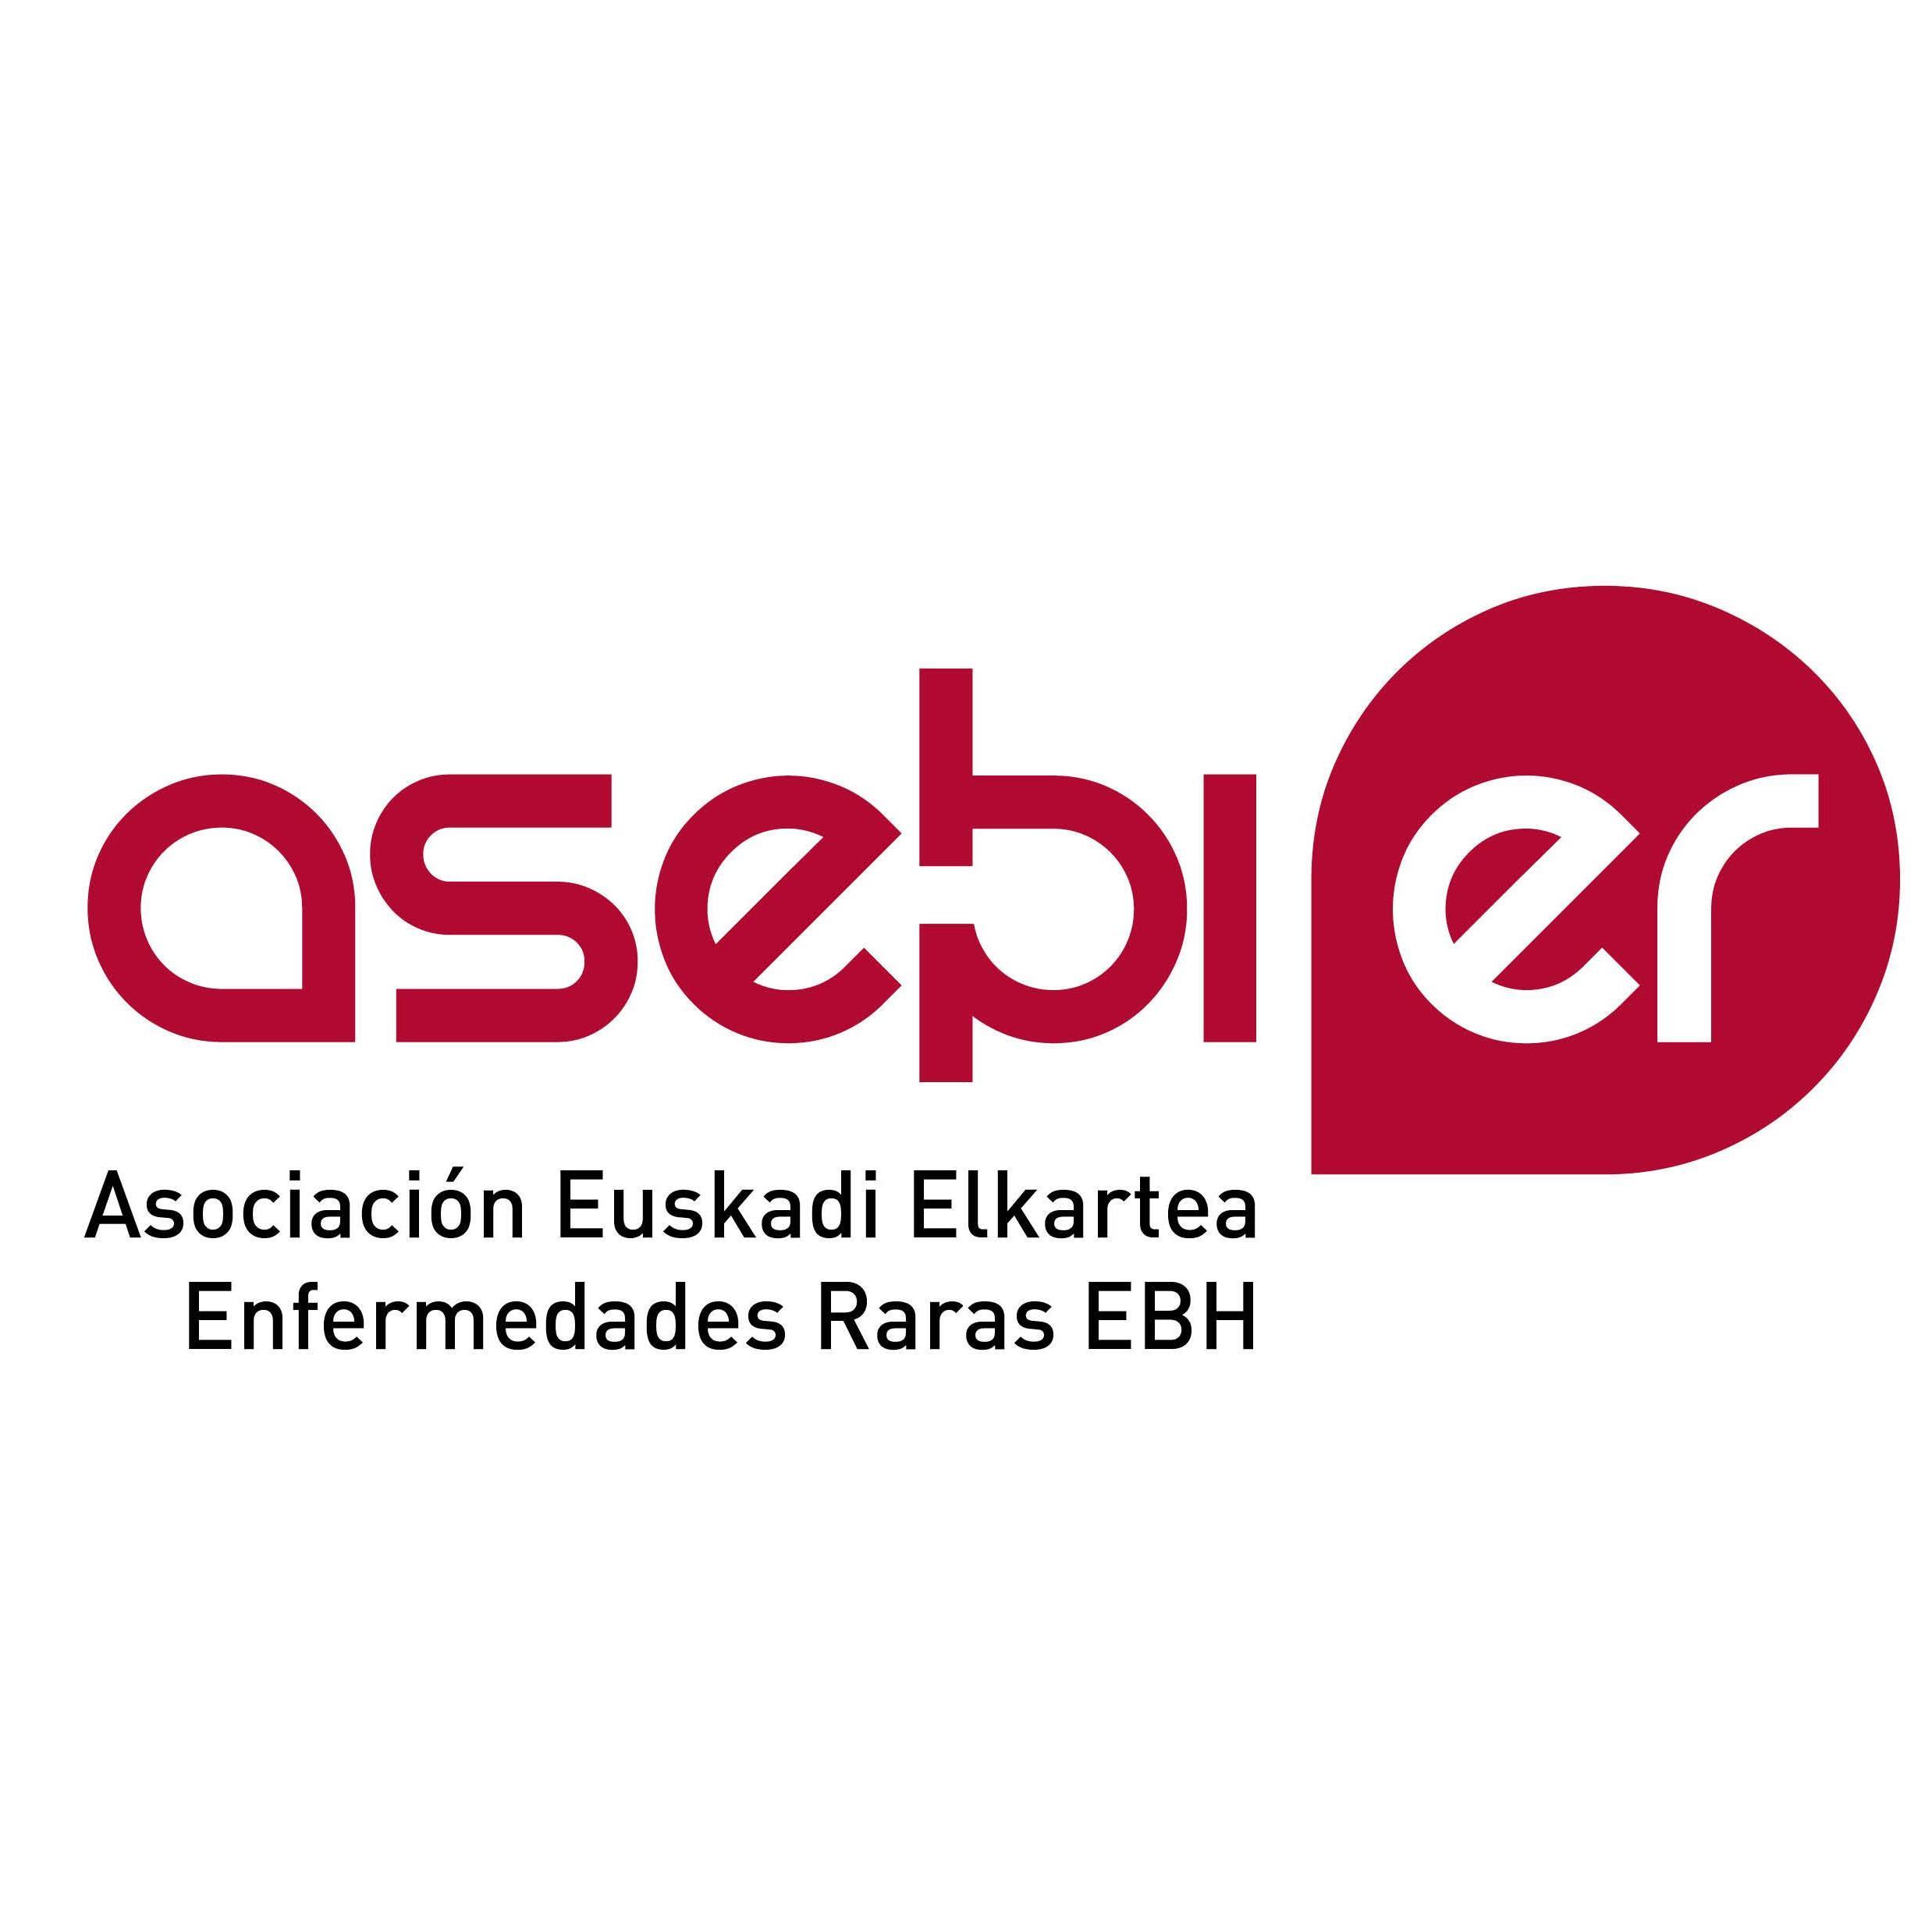 ASEBIER - Asociación Euskadi Elkartea Enfermedades Raras EB